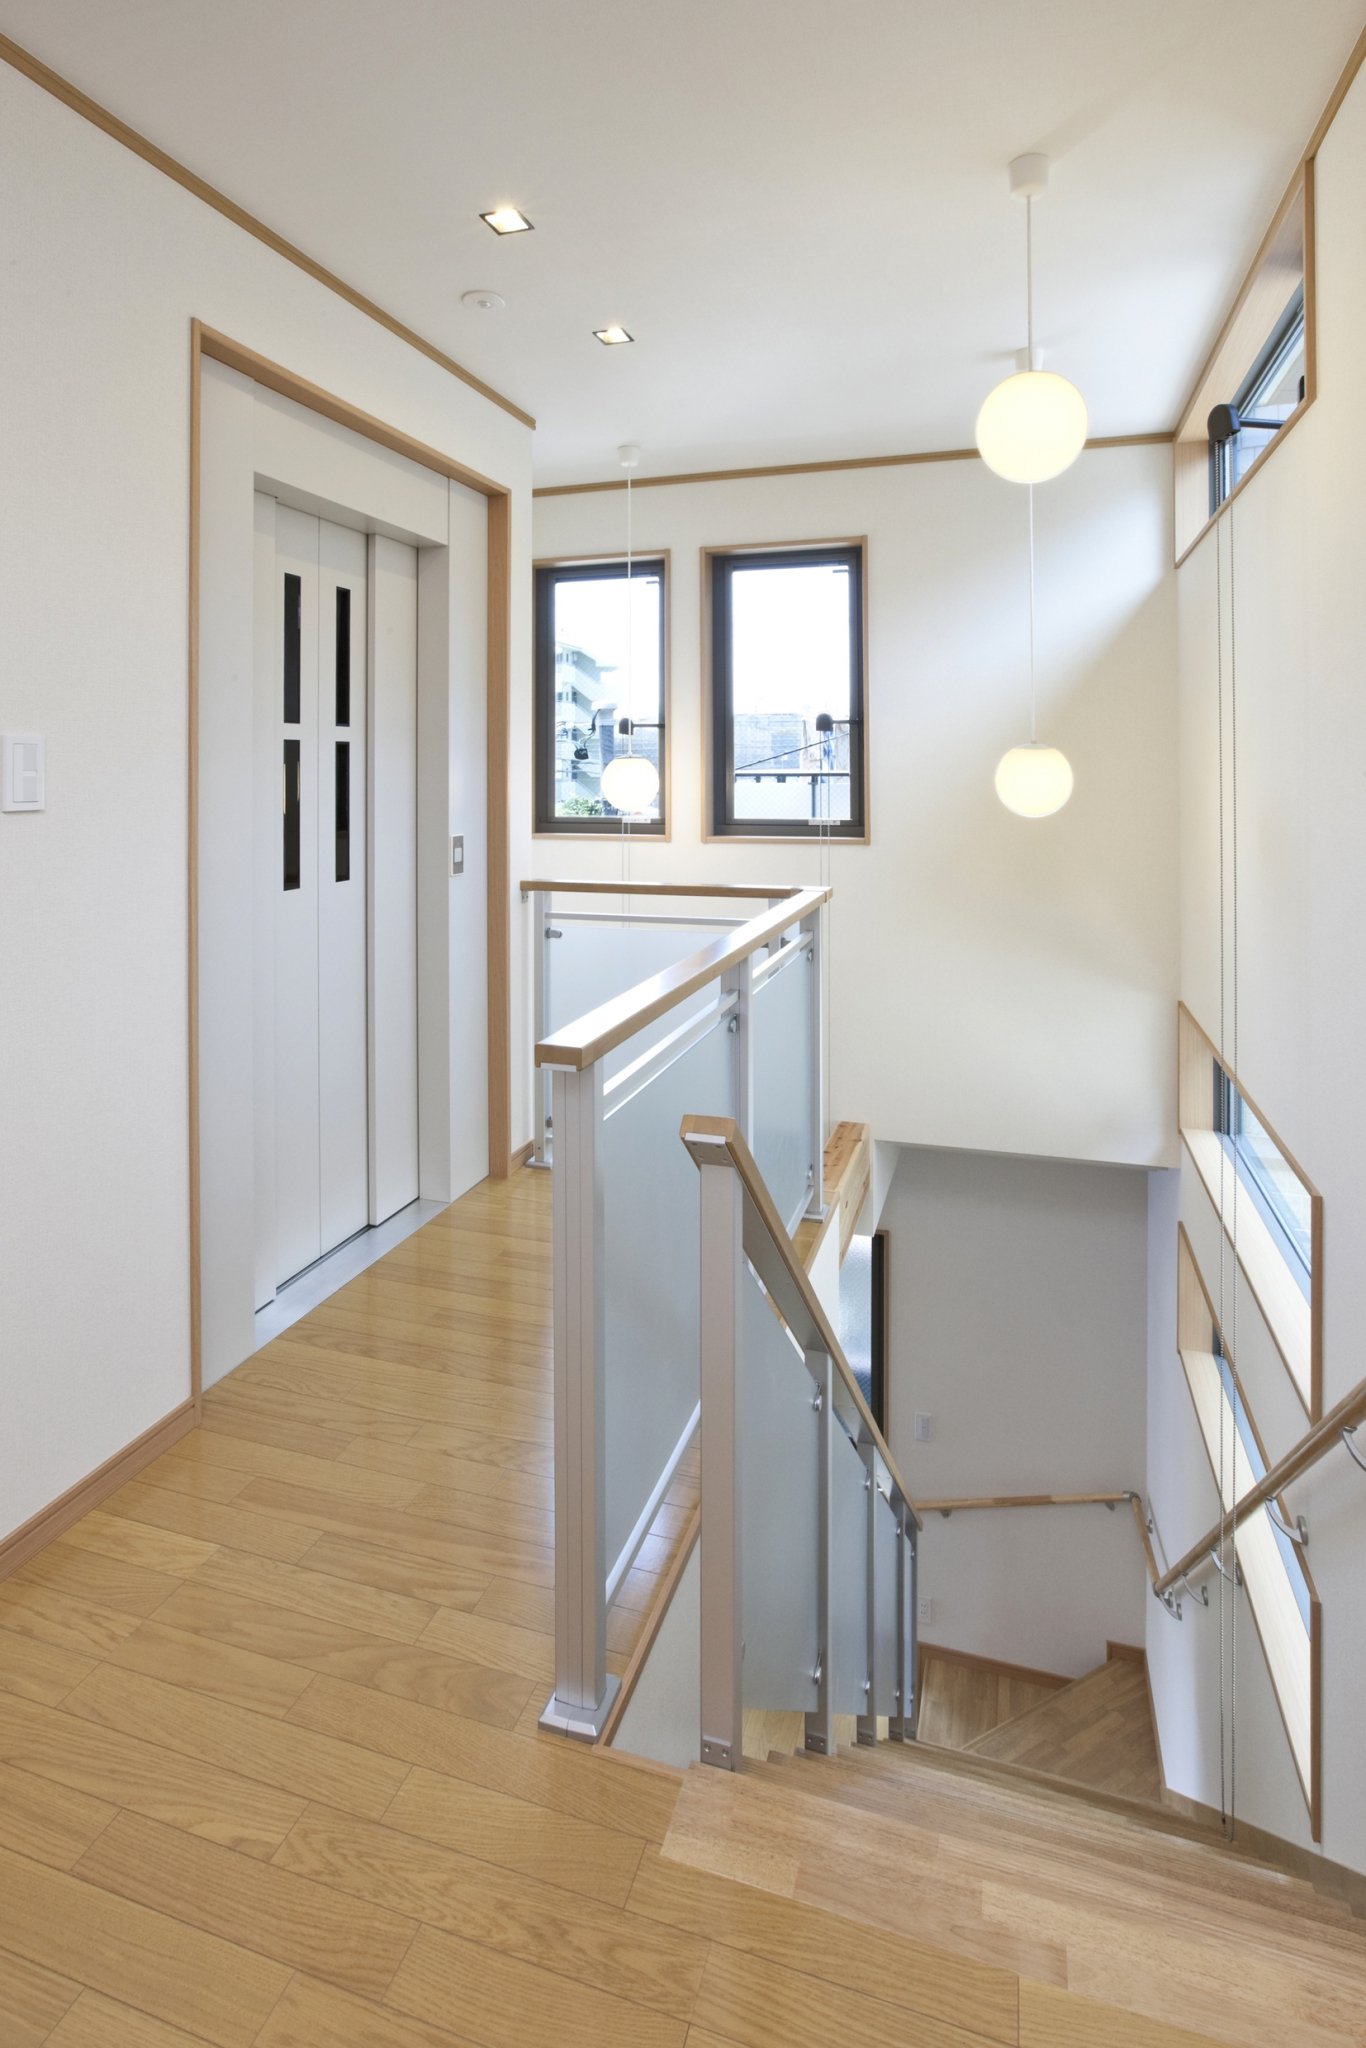 名古屋市の注文住宅のおしゃれな階段 廊下の新築施工写真集 愛知県名古屋市の注文住宅なら実績のあるユニホーへ